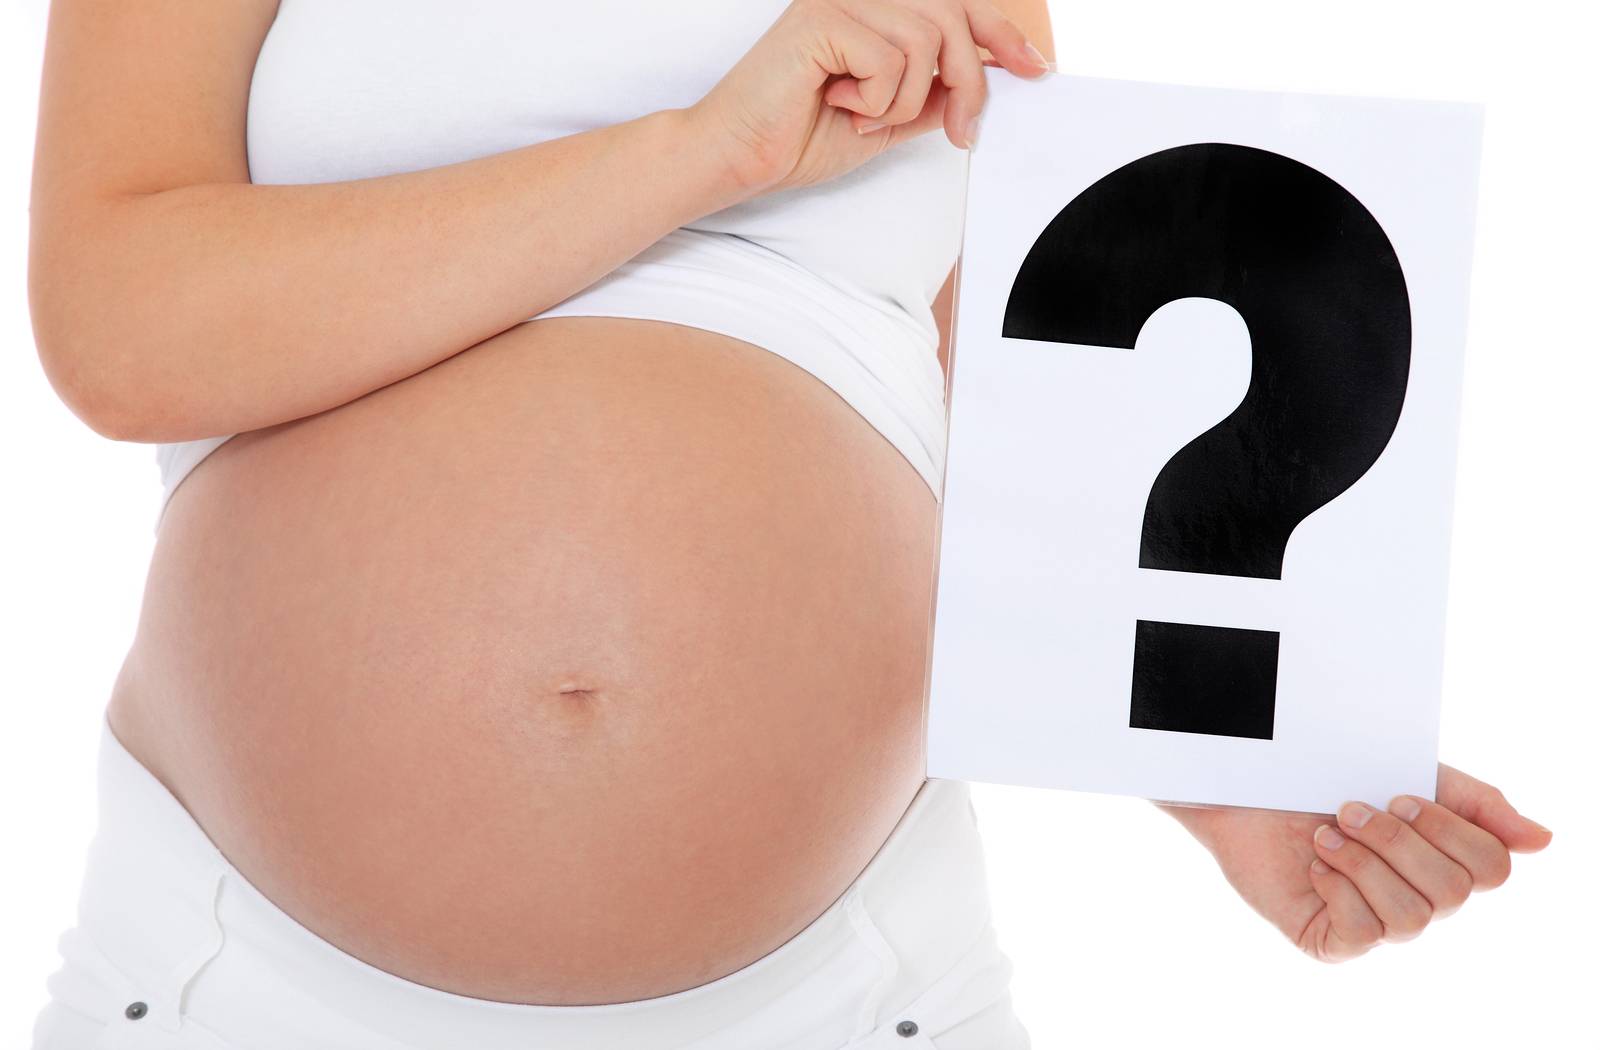 Беременность: о чём нельзя никому говорить?